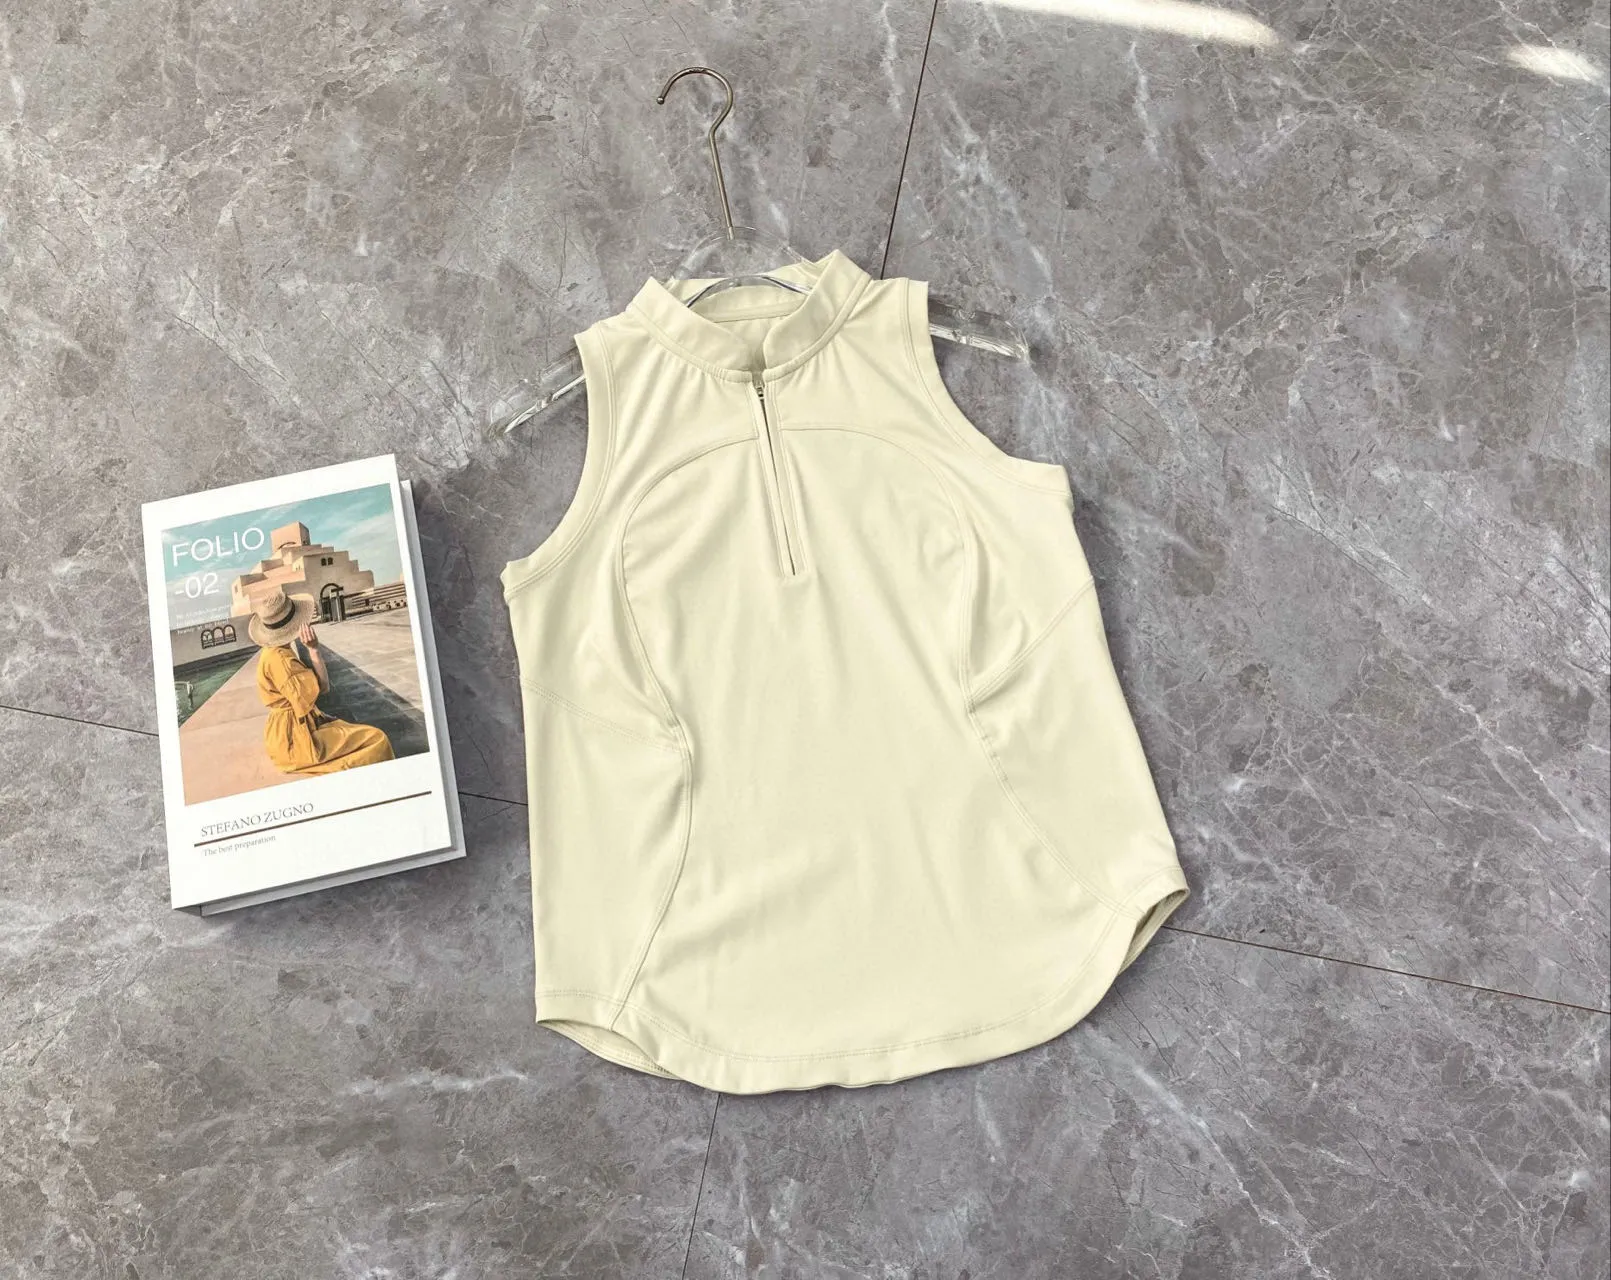 Yoga üstleri nefes alabilen antrenman gömlekleri seksi yelek fiess kıyafeti hızlı kurutma kısa tişörtler yarım yüksek yakalı kadın ince tank spor jogging lulus t gömlek